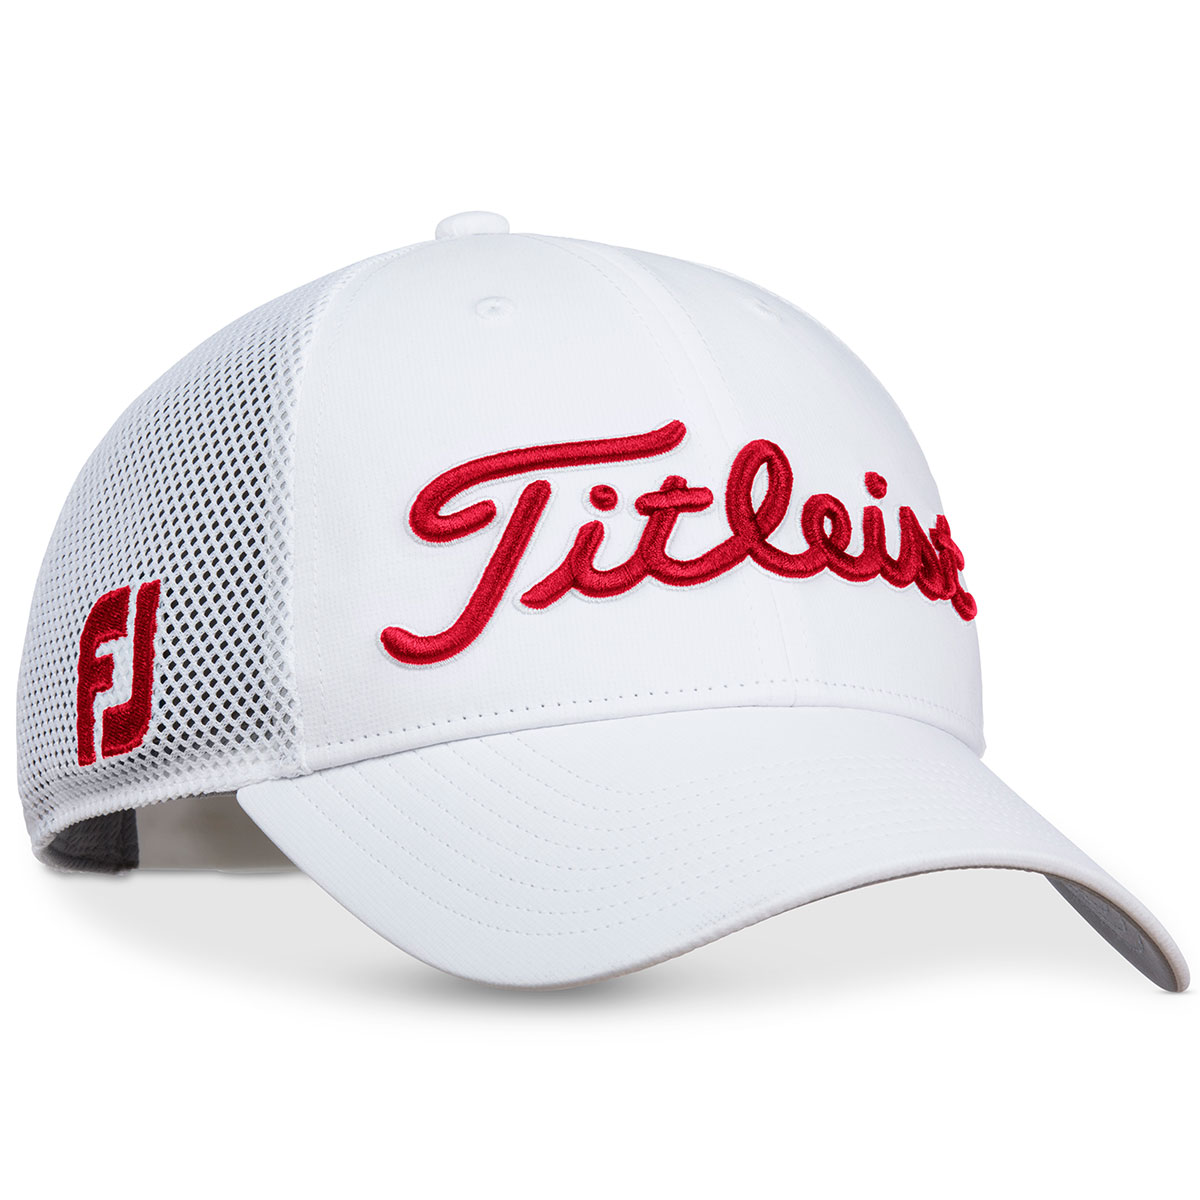 titleist tour performance golf cap